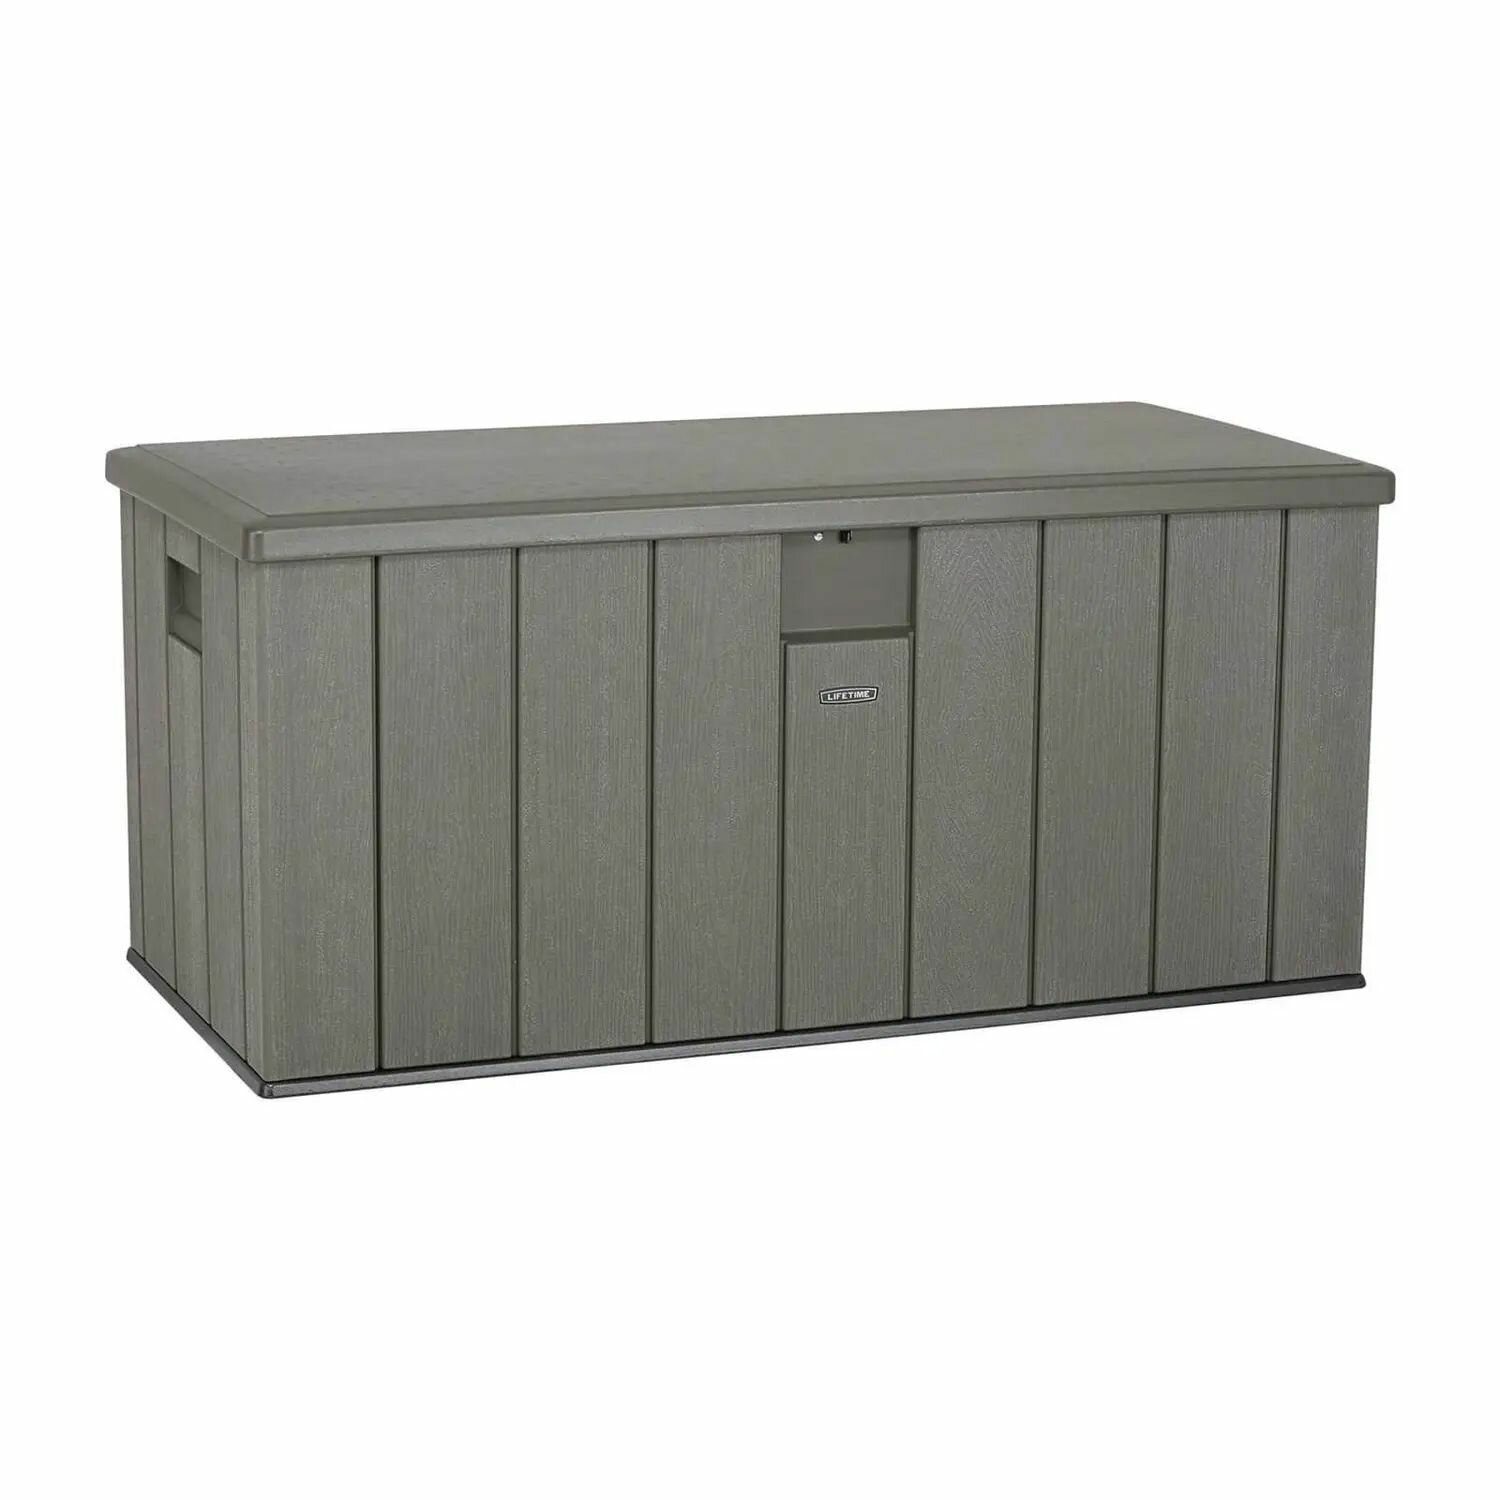 Сундук LifeTime WoodLook 60215 Outdoor Storage Deck Box 567л